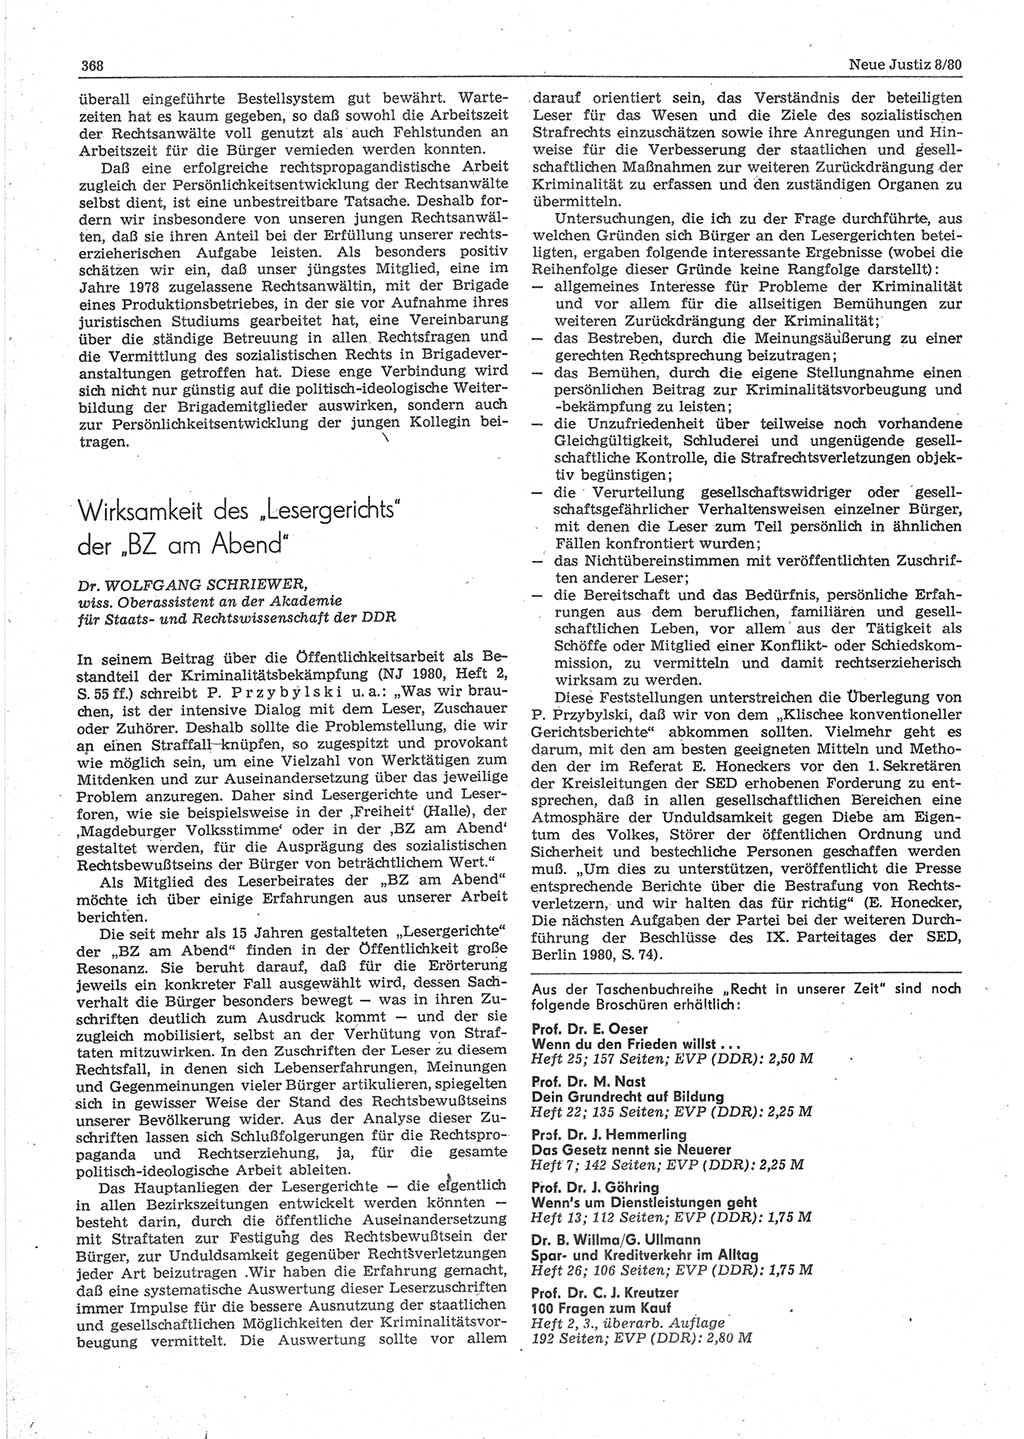 Neue Justiz (NJ), Zeitschrift für sozialistisches Recht und Gesetzlichkeit [Deutsche Demokratische Republik (DDR)], 34. Jahrgang 1980, Seite 368 (NJ DDR 1980, S. 368)